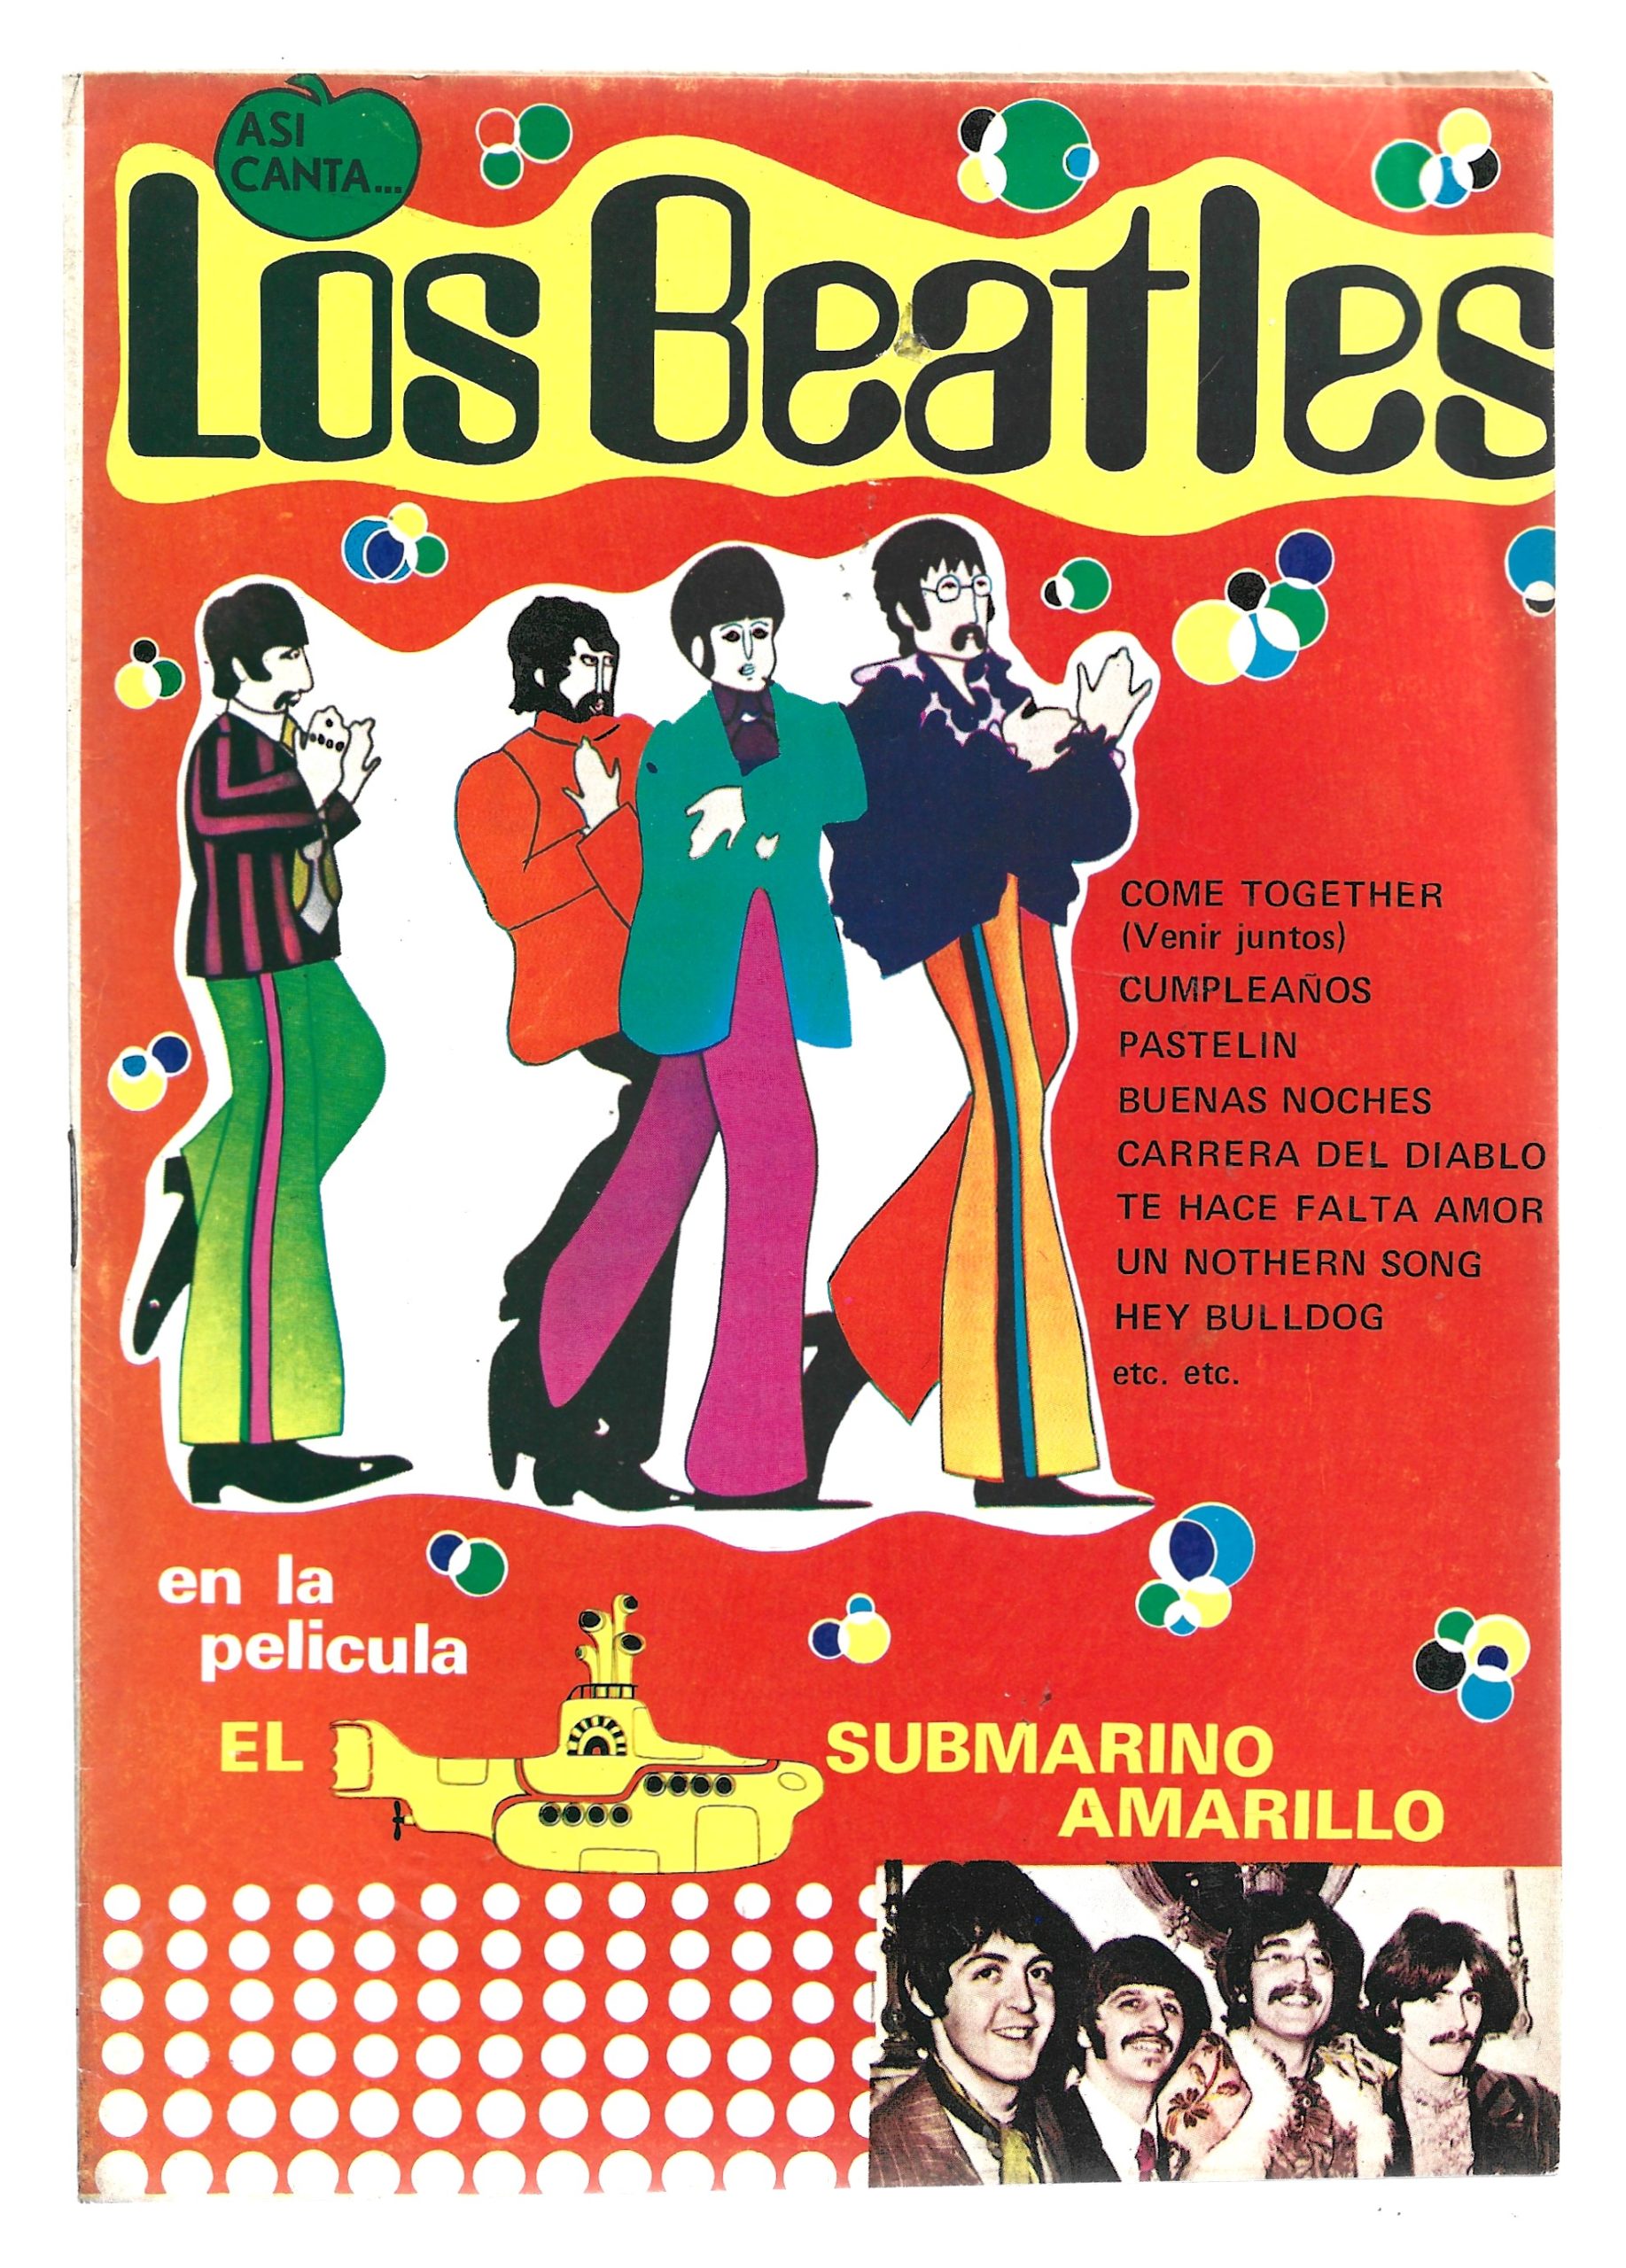 Así canta … Los Beatles en la película el submarino amarillo – Comics  Trinidad – Coleccionismo de comics, albums de cromos, colecciones